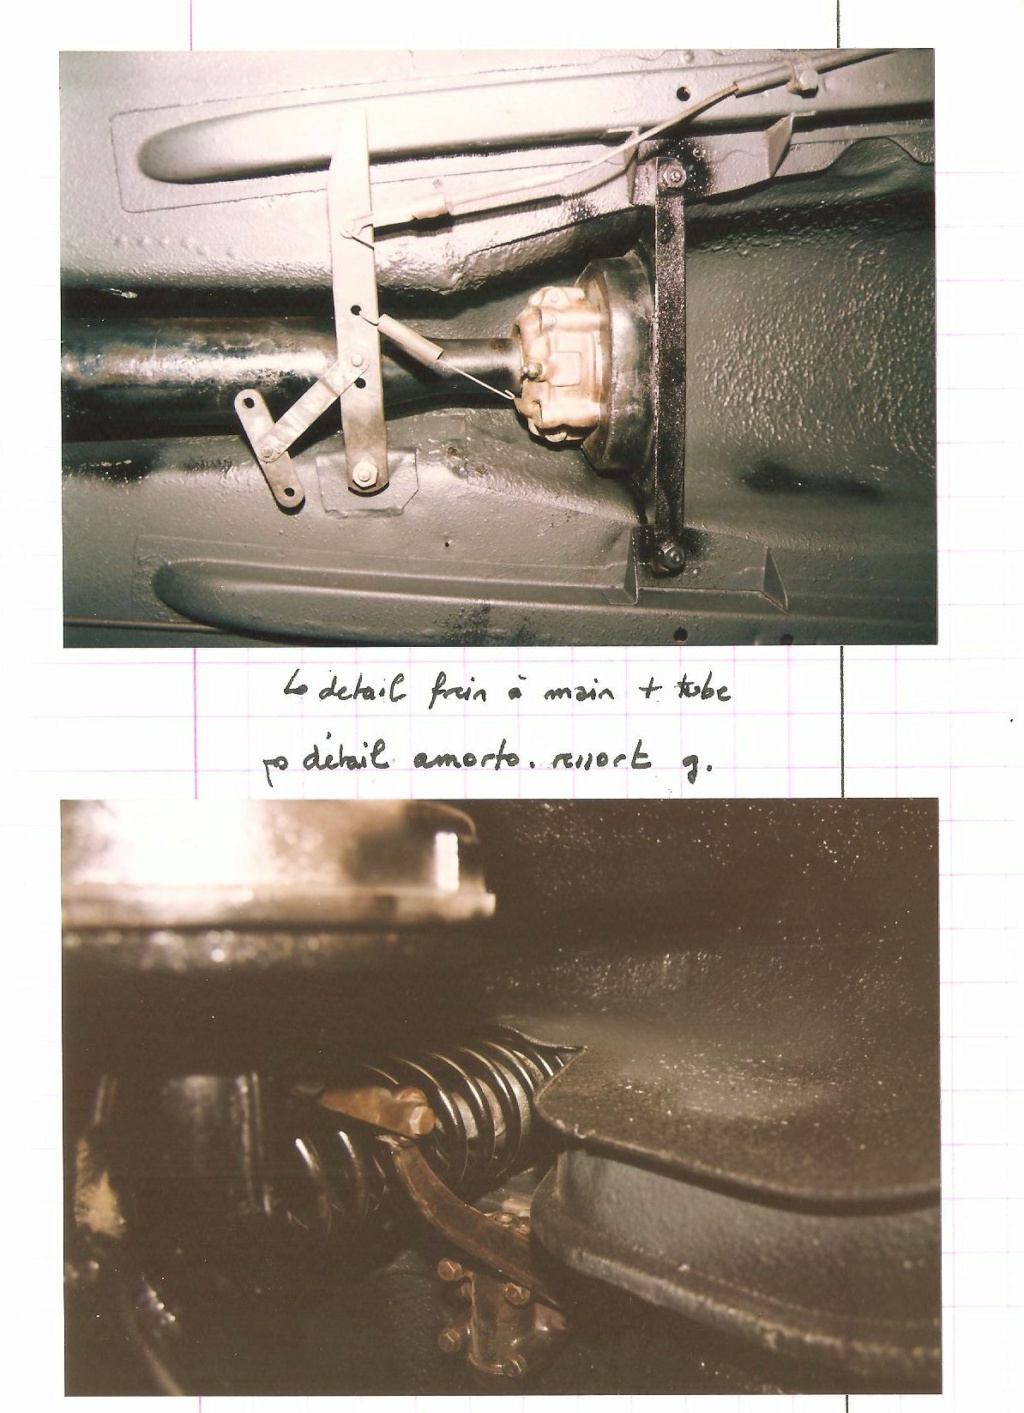 Restauration Peugeot 203C 1960 (rétrospective 1991-1992) - Page 2 Scan_148